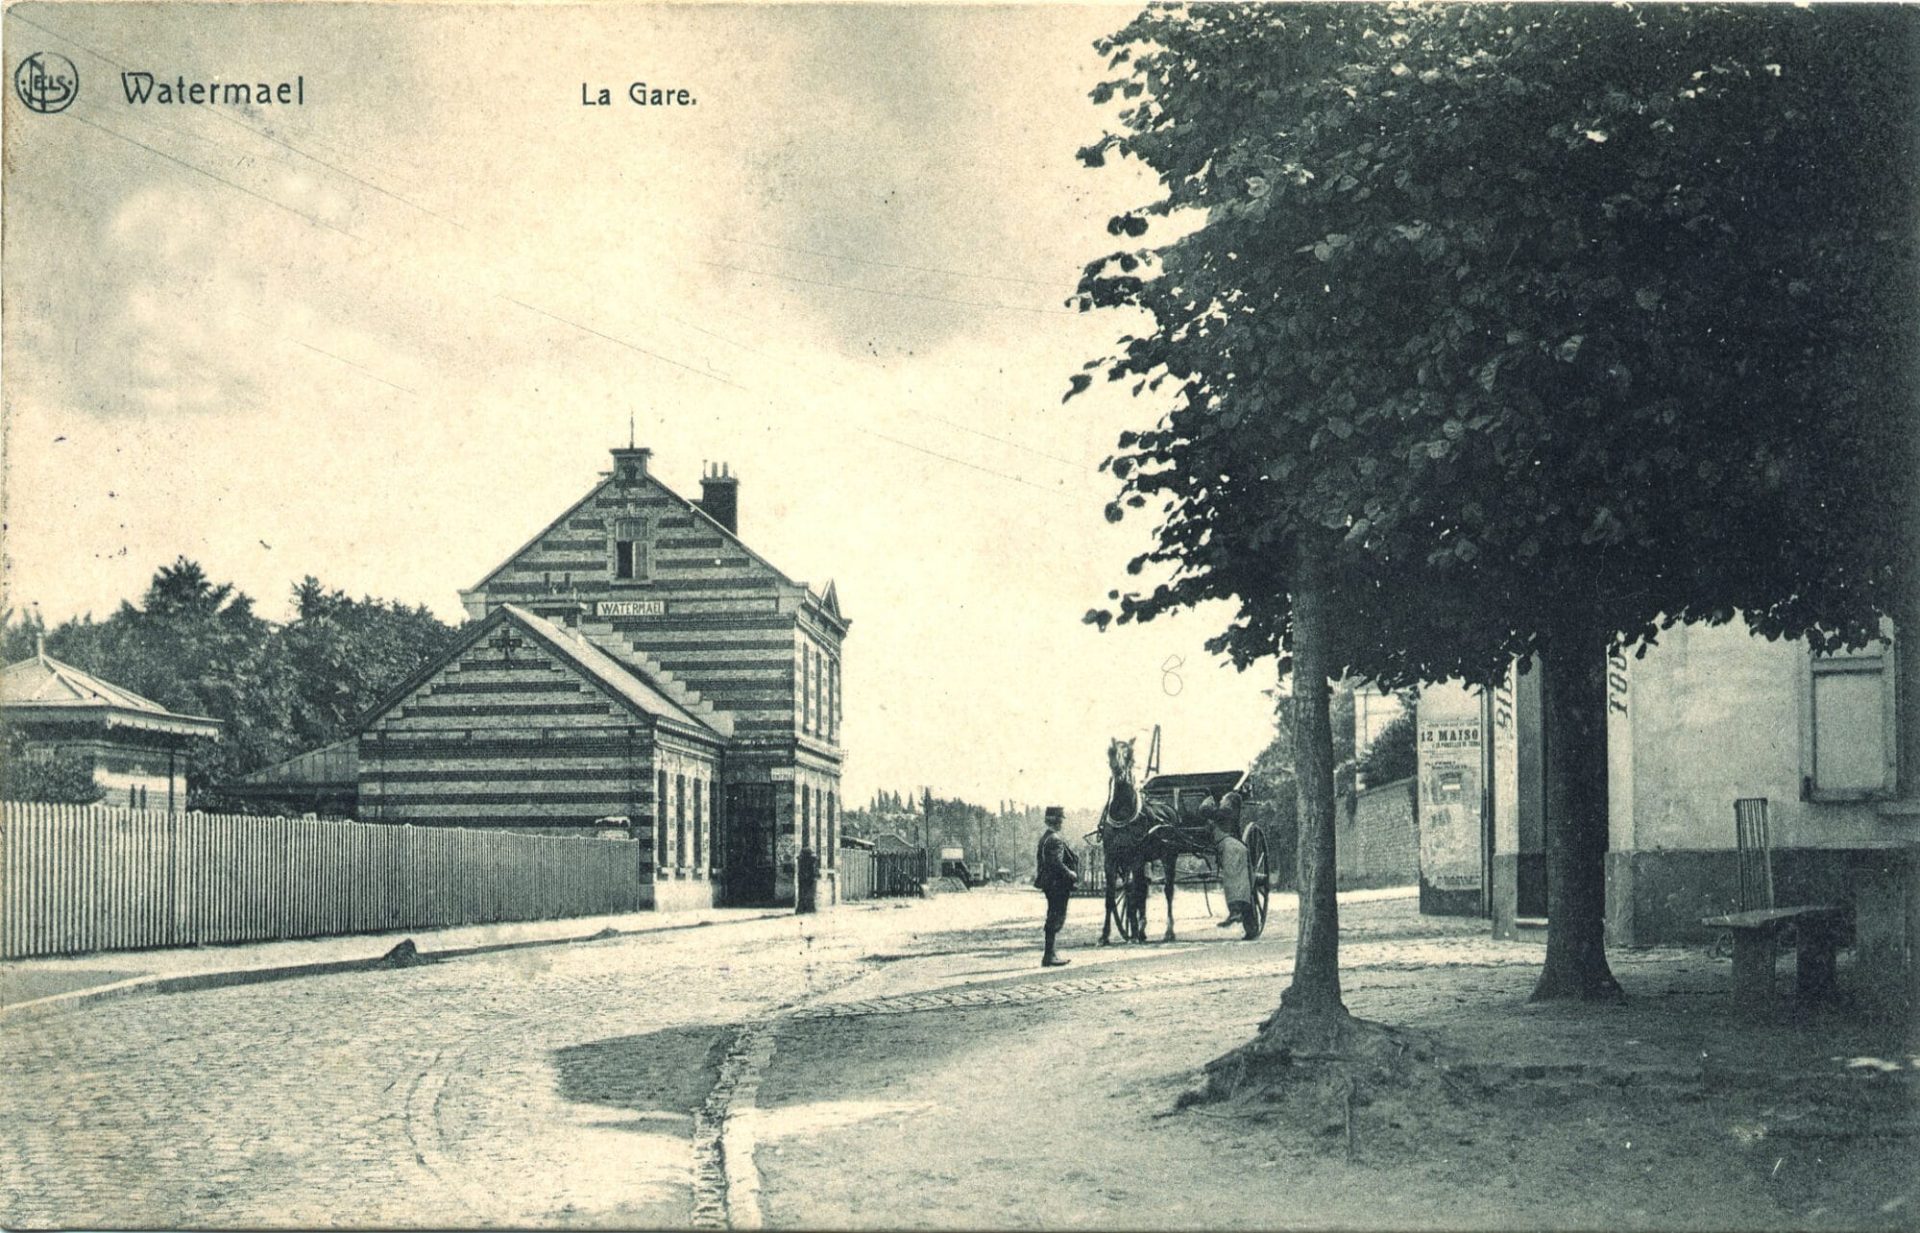 La gare de Watermael et la place de la Station - Carte postale Ed. Hevers Nels, vers 1910.